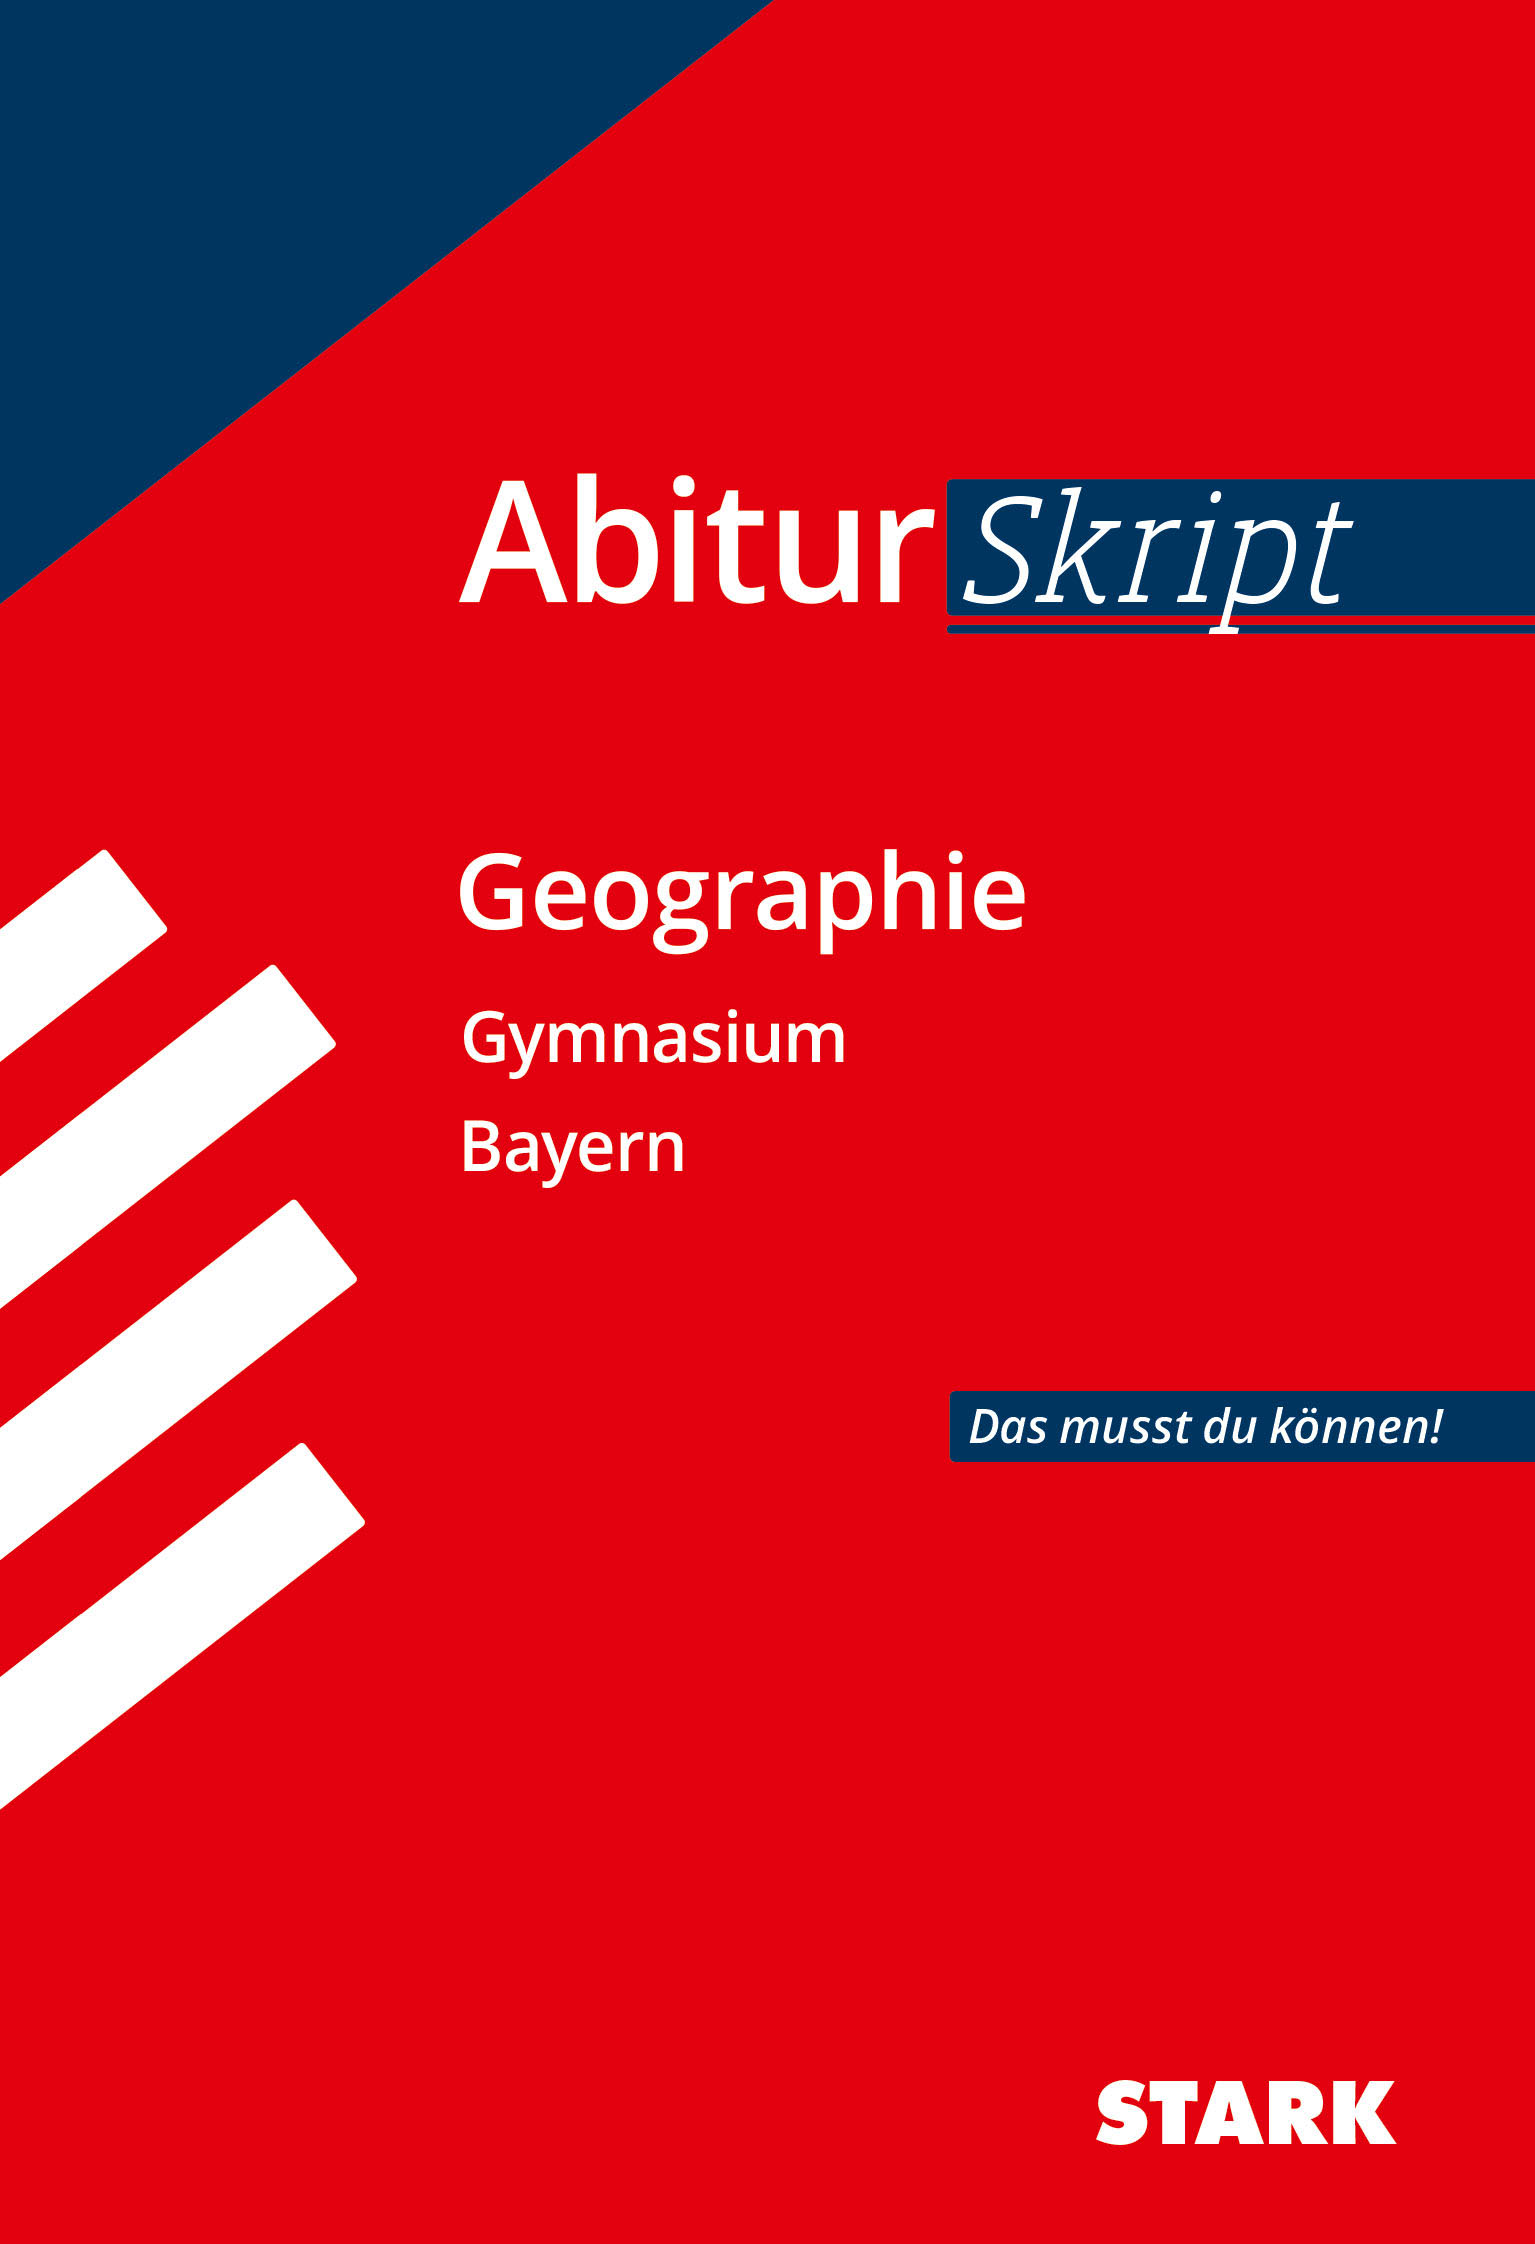 Rainer Koch / AbiturSkript - Geographie Bayern - Bild 1 von 1